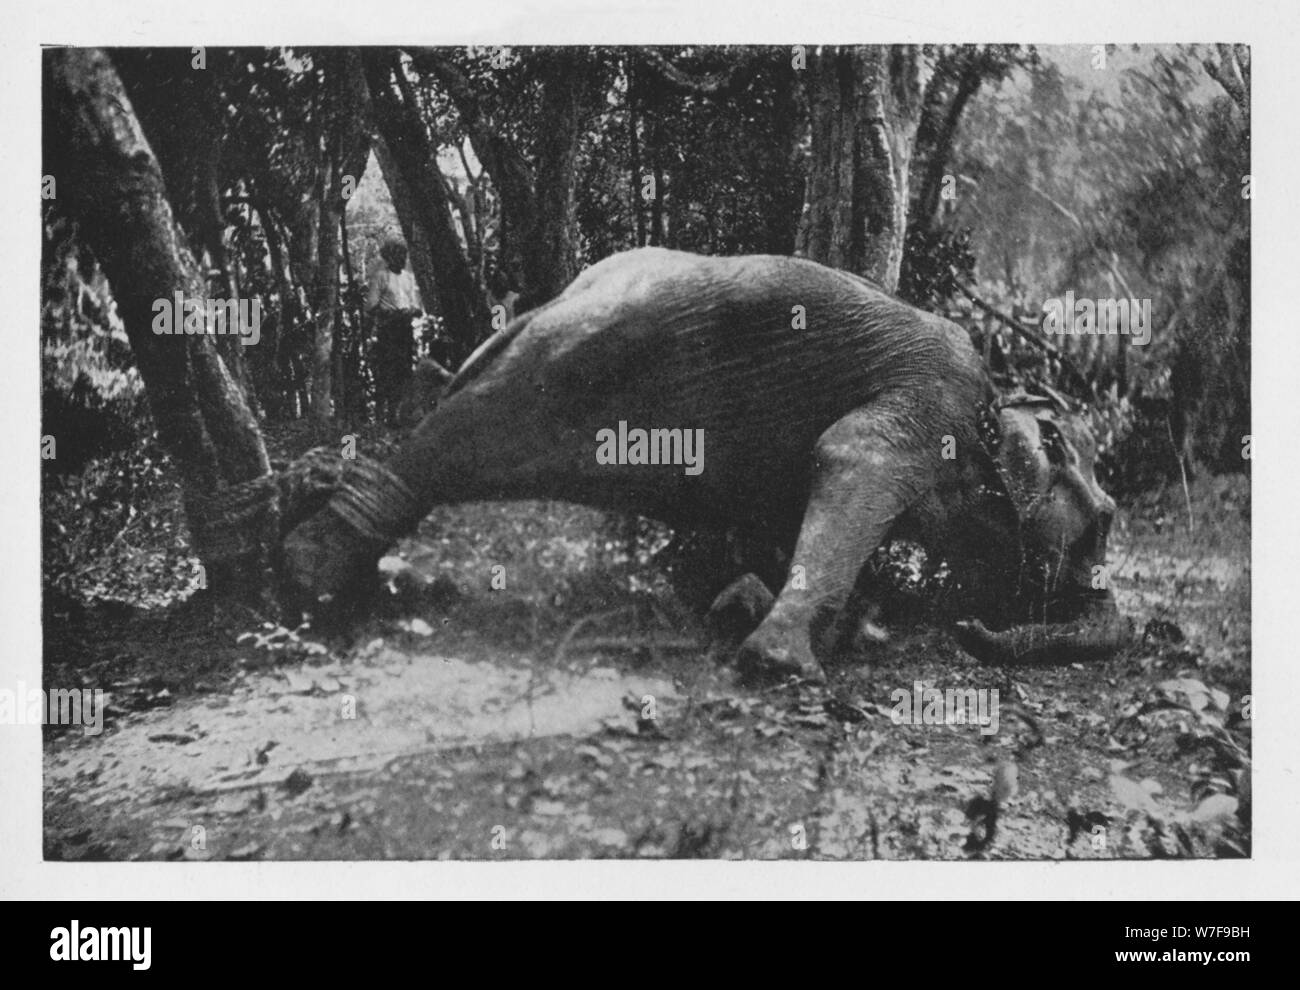 Uitrusten formaat heldin Animal cruelty Black and White Stock Photos & Images - Alamy